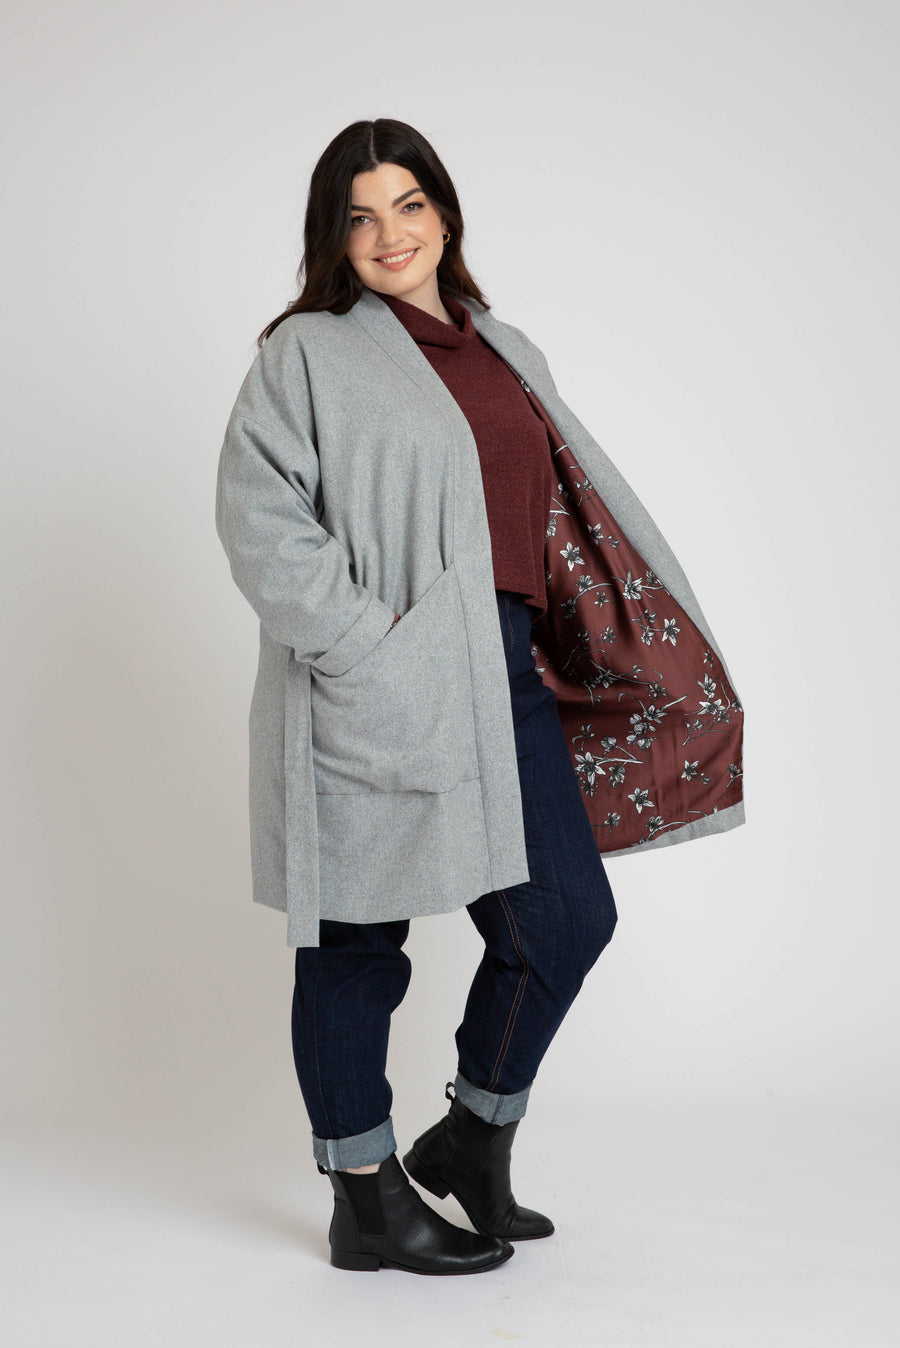 Megan Nielsen - Hovea Jacket & Coat - 14-34 – RICK RACK Textiles